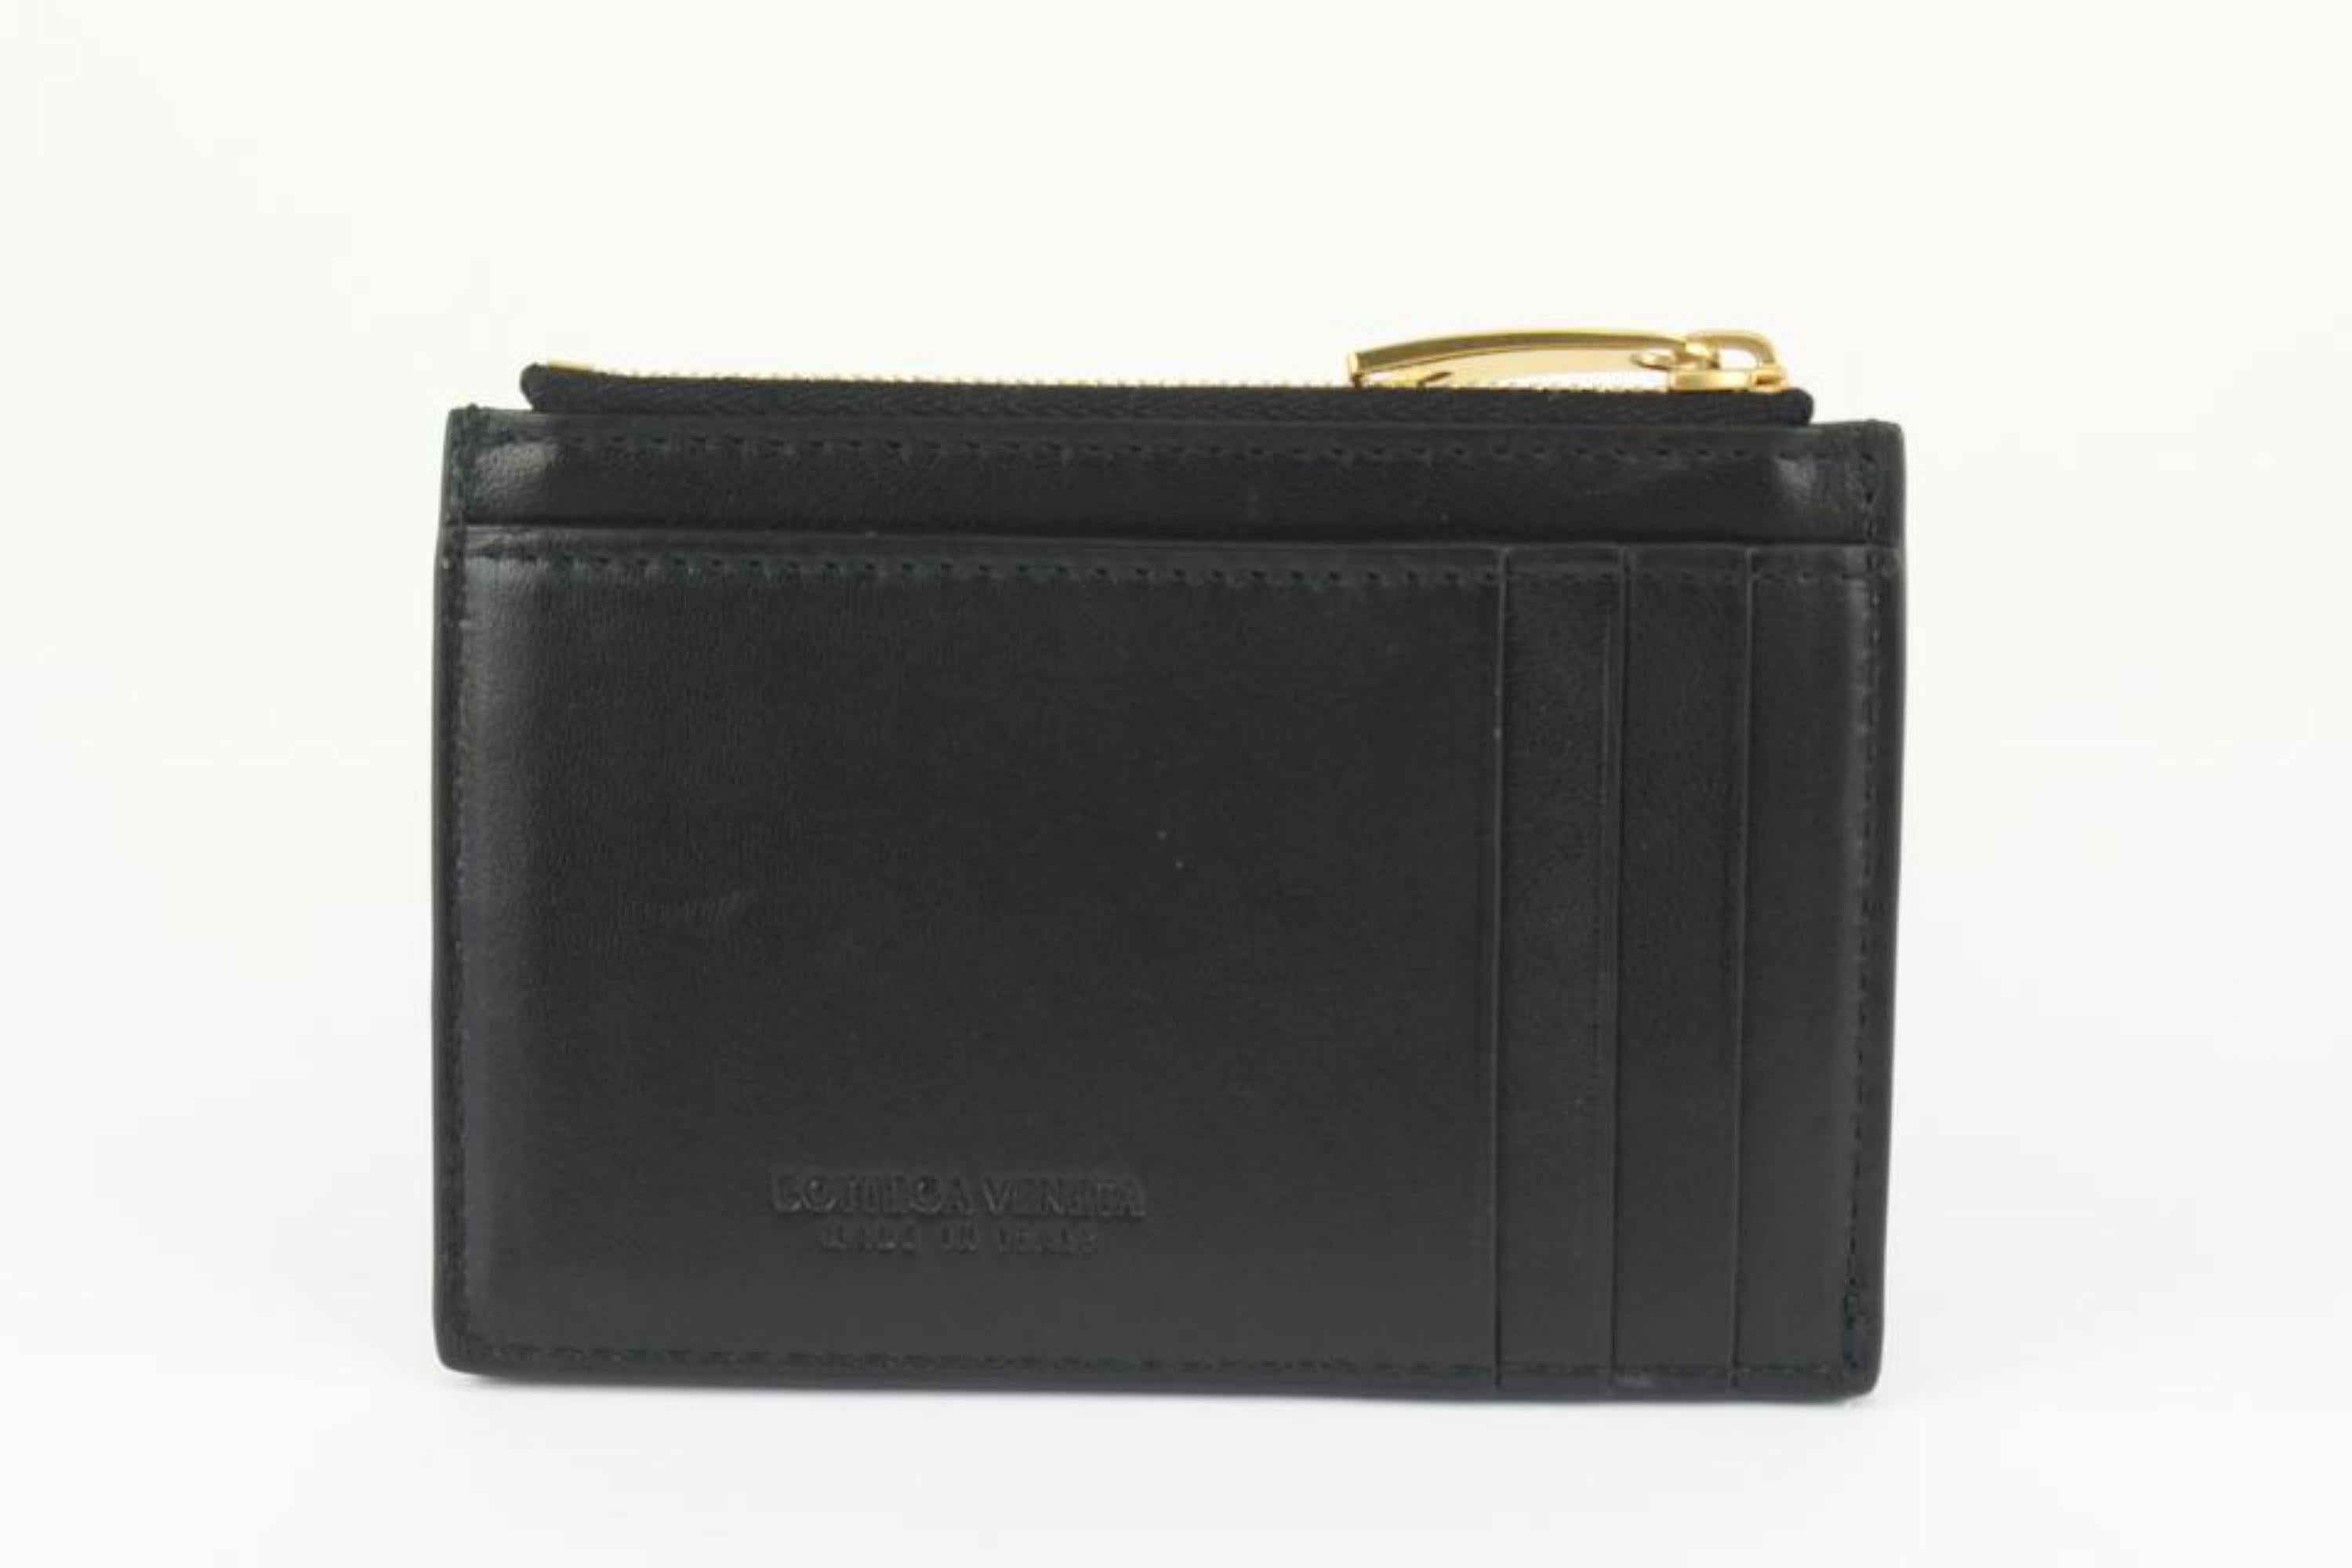 Bottega Veneta Black Intrecciato Leather Zipped Card Holder 1123bv34 For Sale 2